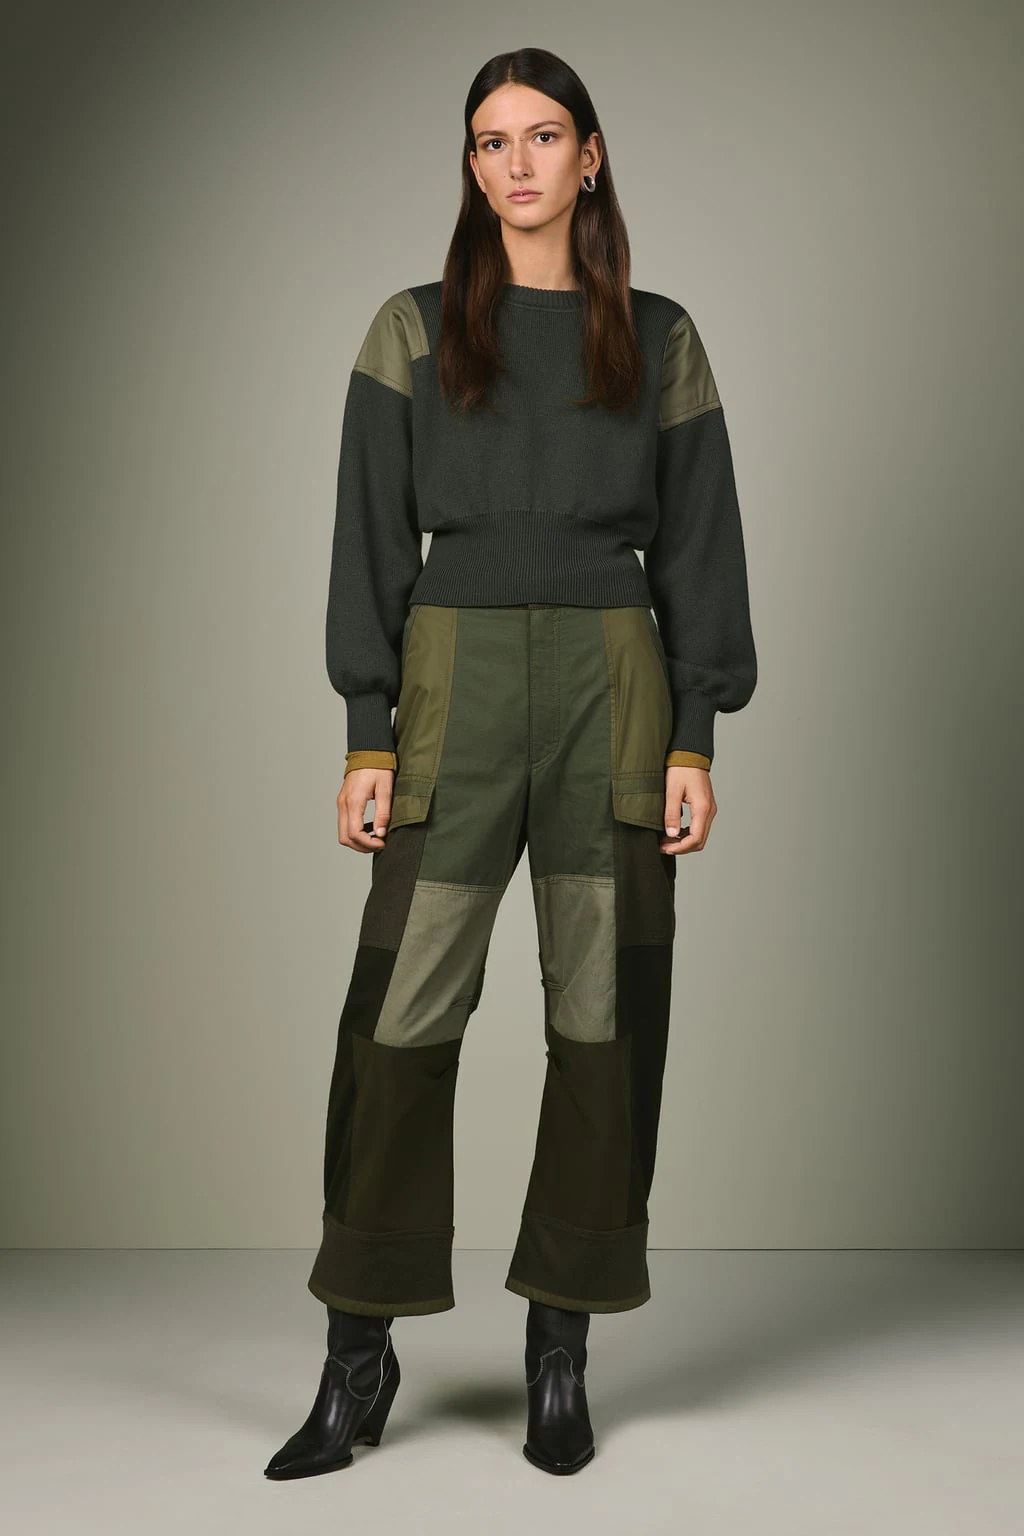 Zara lanza la tercera colección SRPLS, una línea de estética militar cuyos diseños se han vuelto imprescindibles en los looks de Marta Ortega